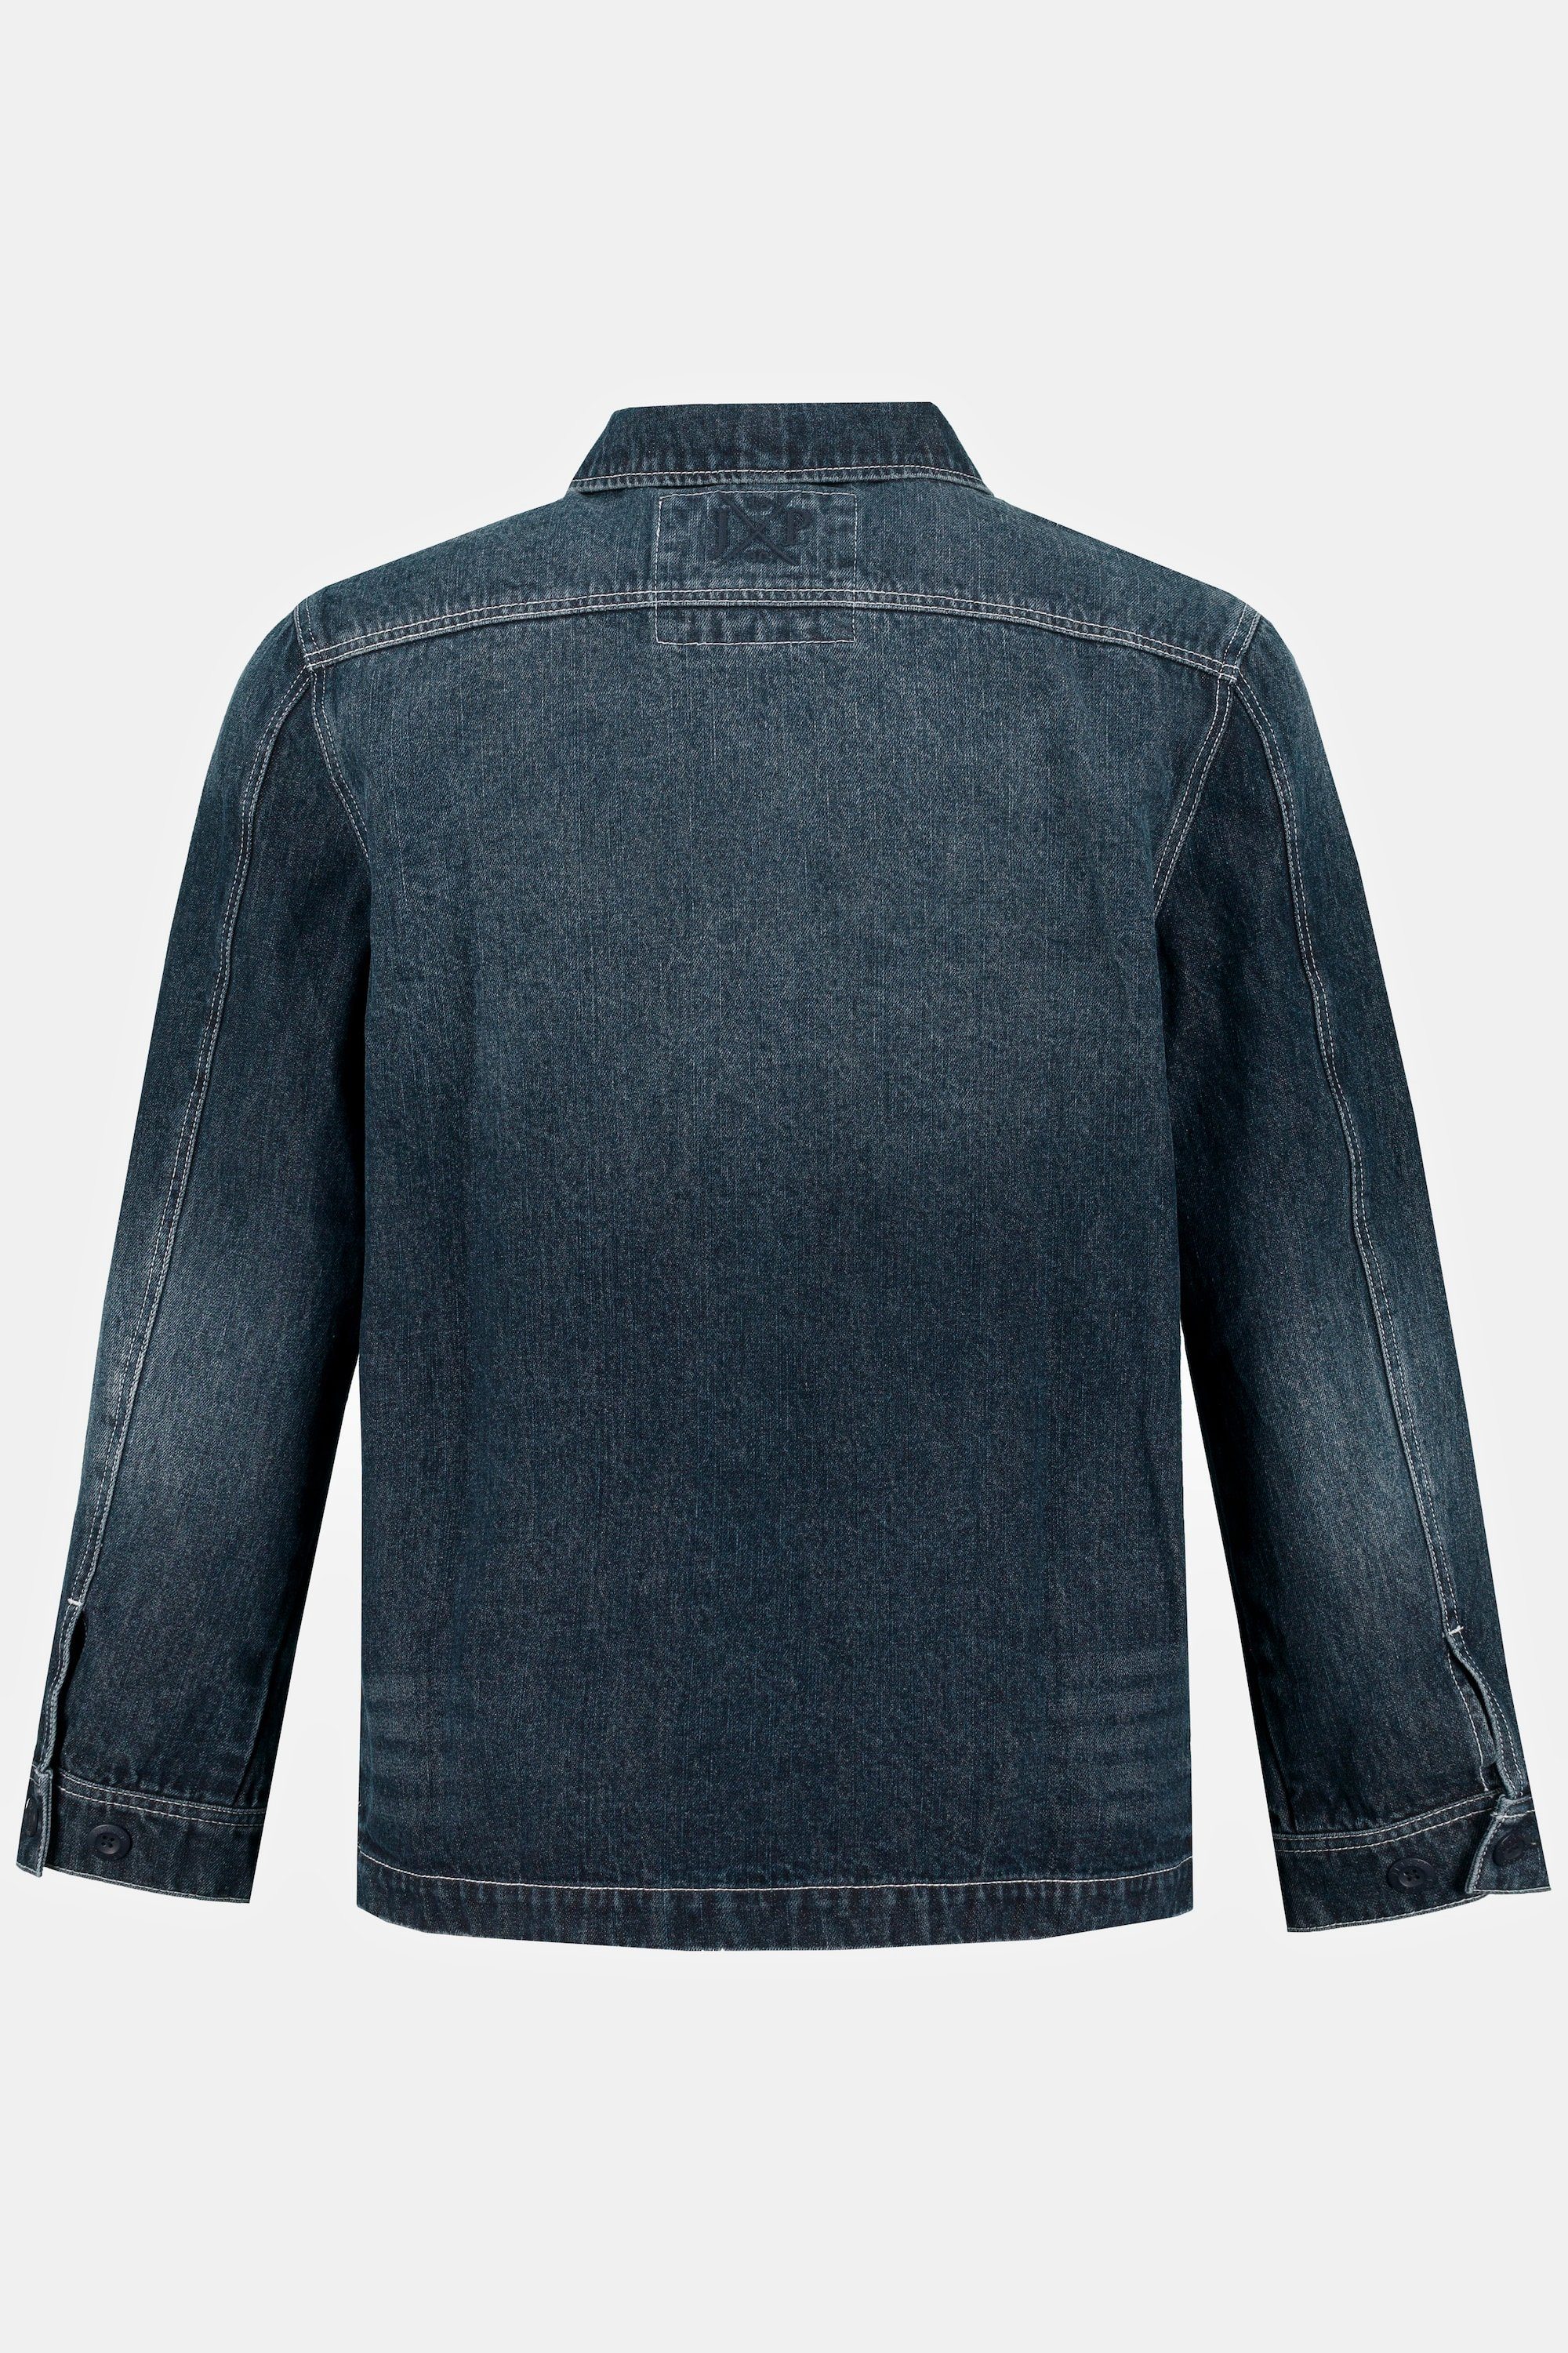 JP1880 Taschen große Funktionsjacke denim dark Workerstyle blue Jeansjacke